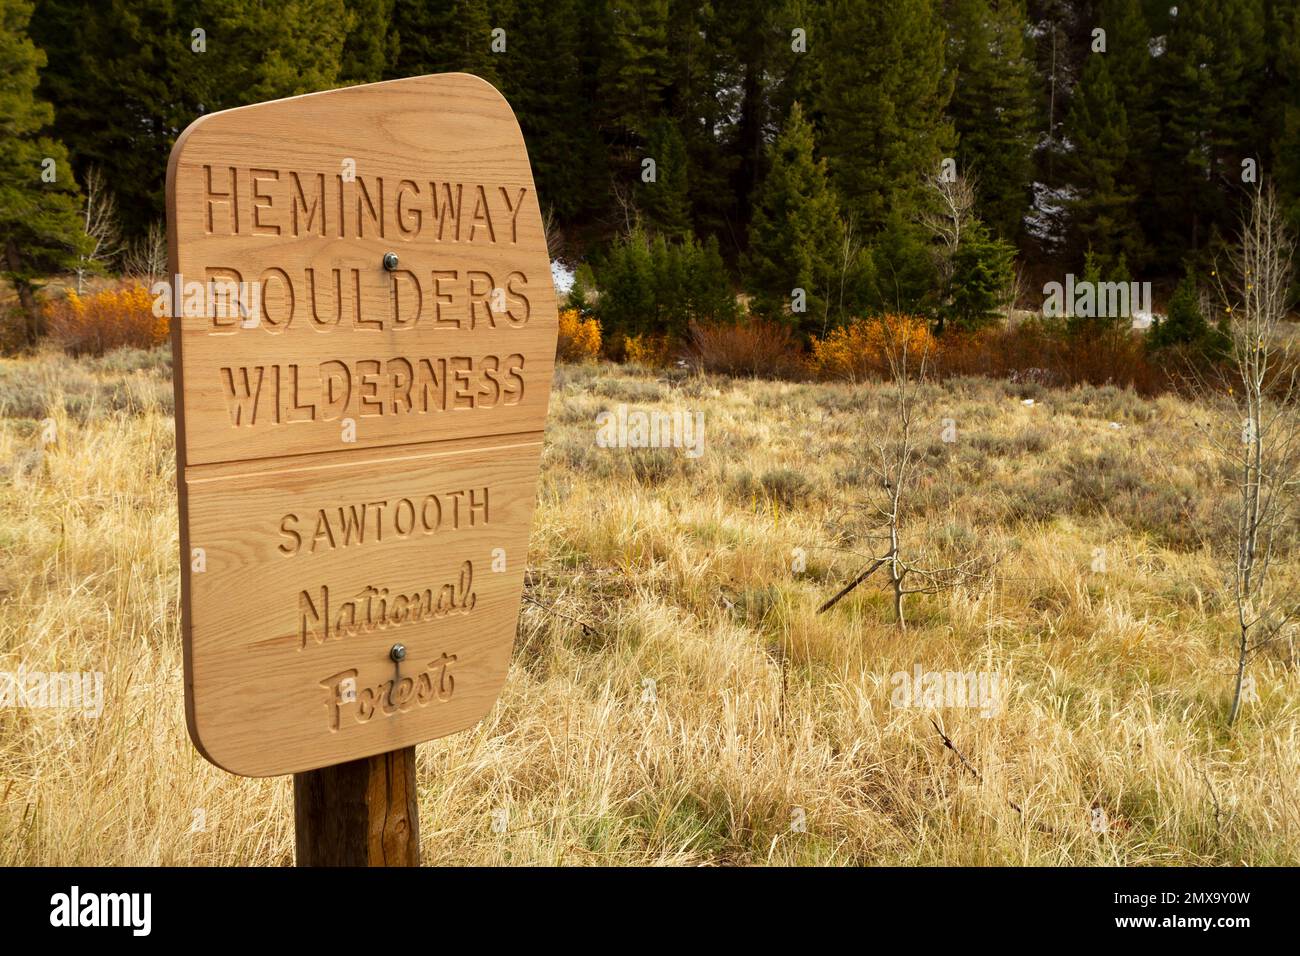 Ein neues Holzschild mit geschnitzten Wörtern für die Hemingway Boulders Wilderness Area im Sawtooth National Forest in Idaho, USA, im Herbst aufgenommen. Stockfoto